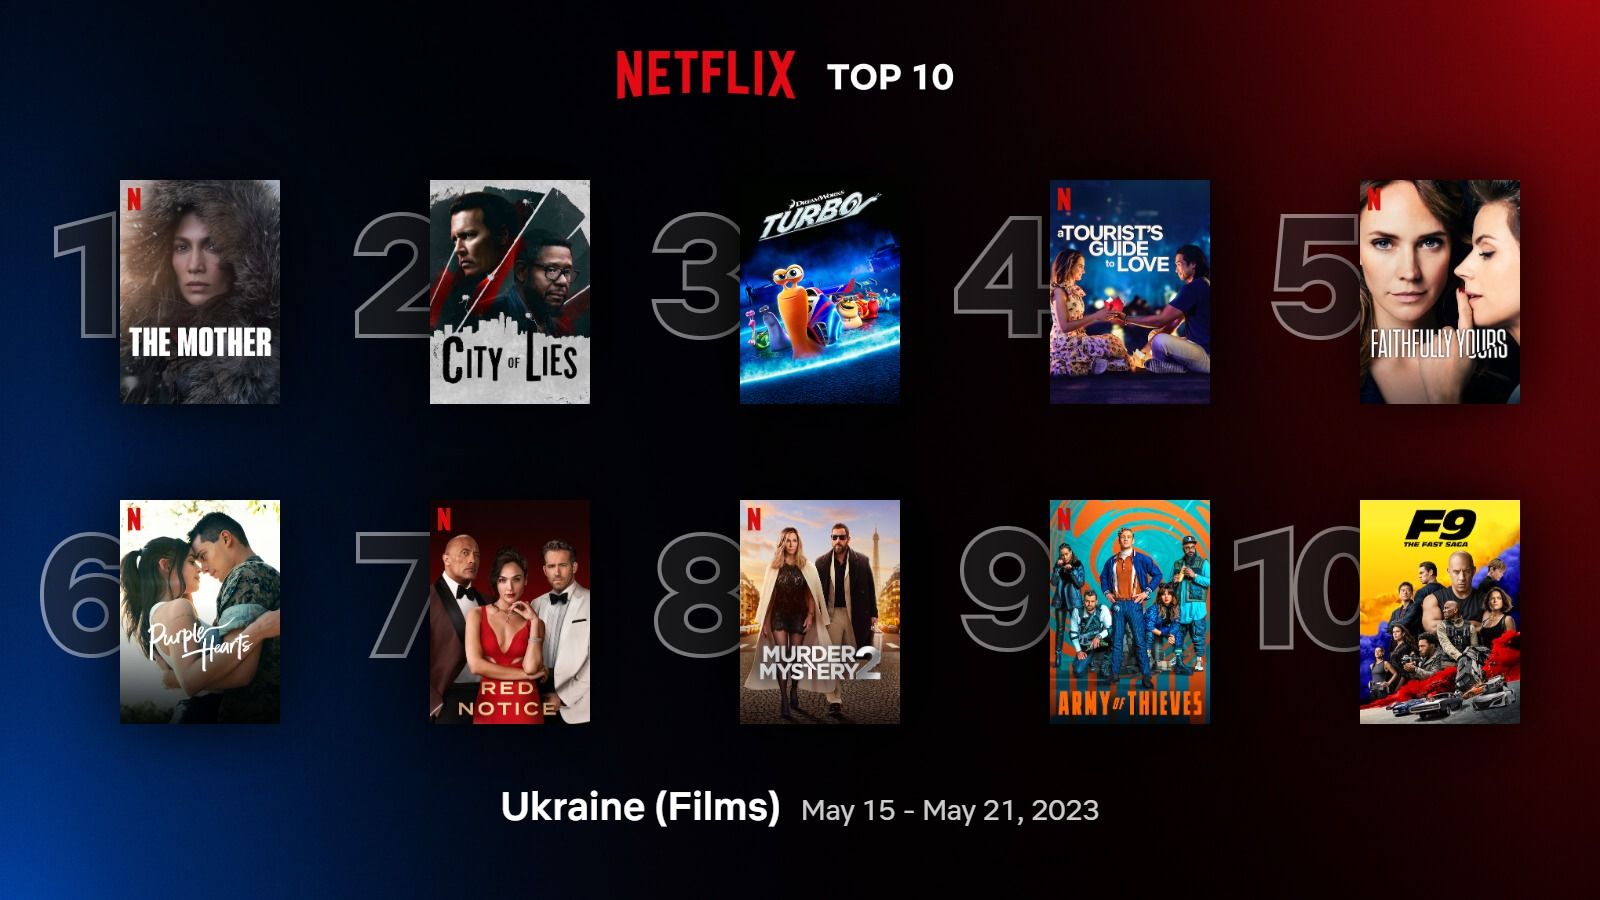 Самые популярные фильмы и сериалы Netflix, наиболее просматриваемые в Украине – список